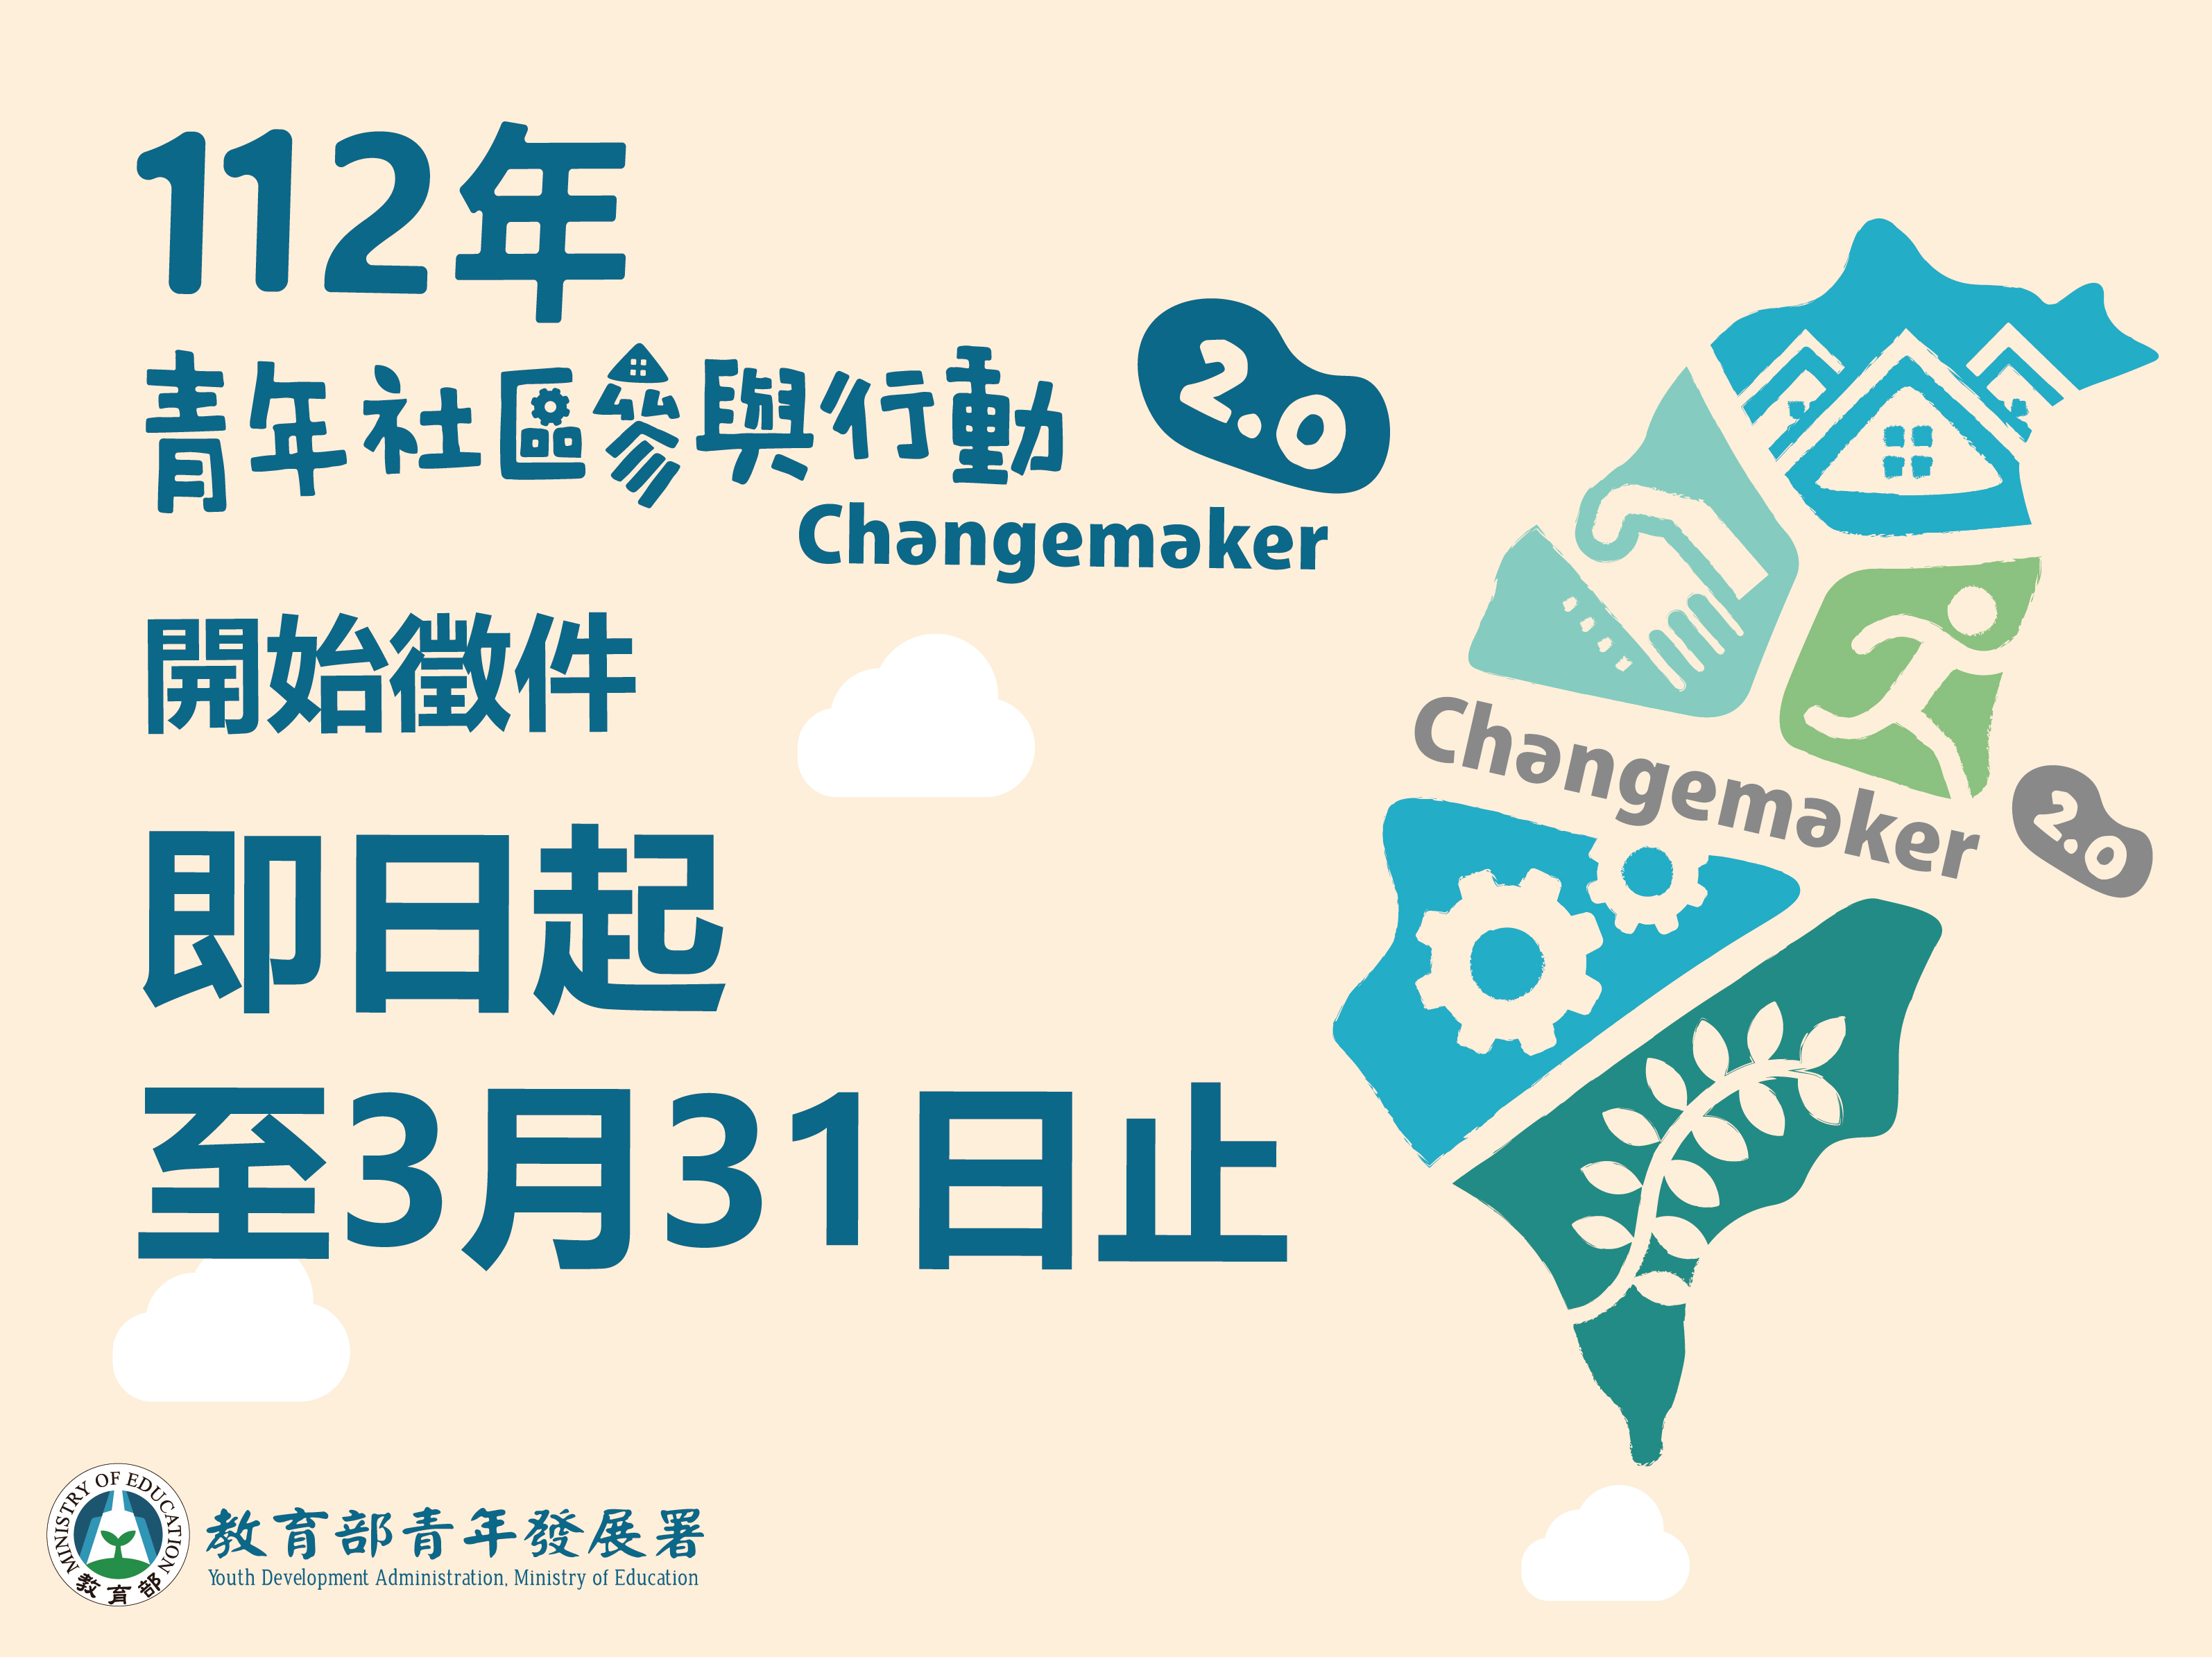 112年青年社區參與行動2.0 Changemaker計畫徵件